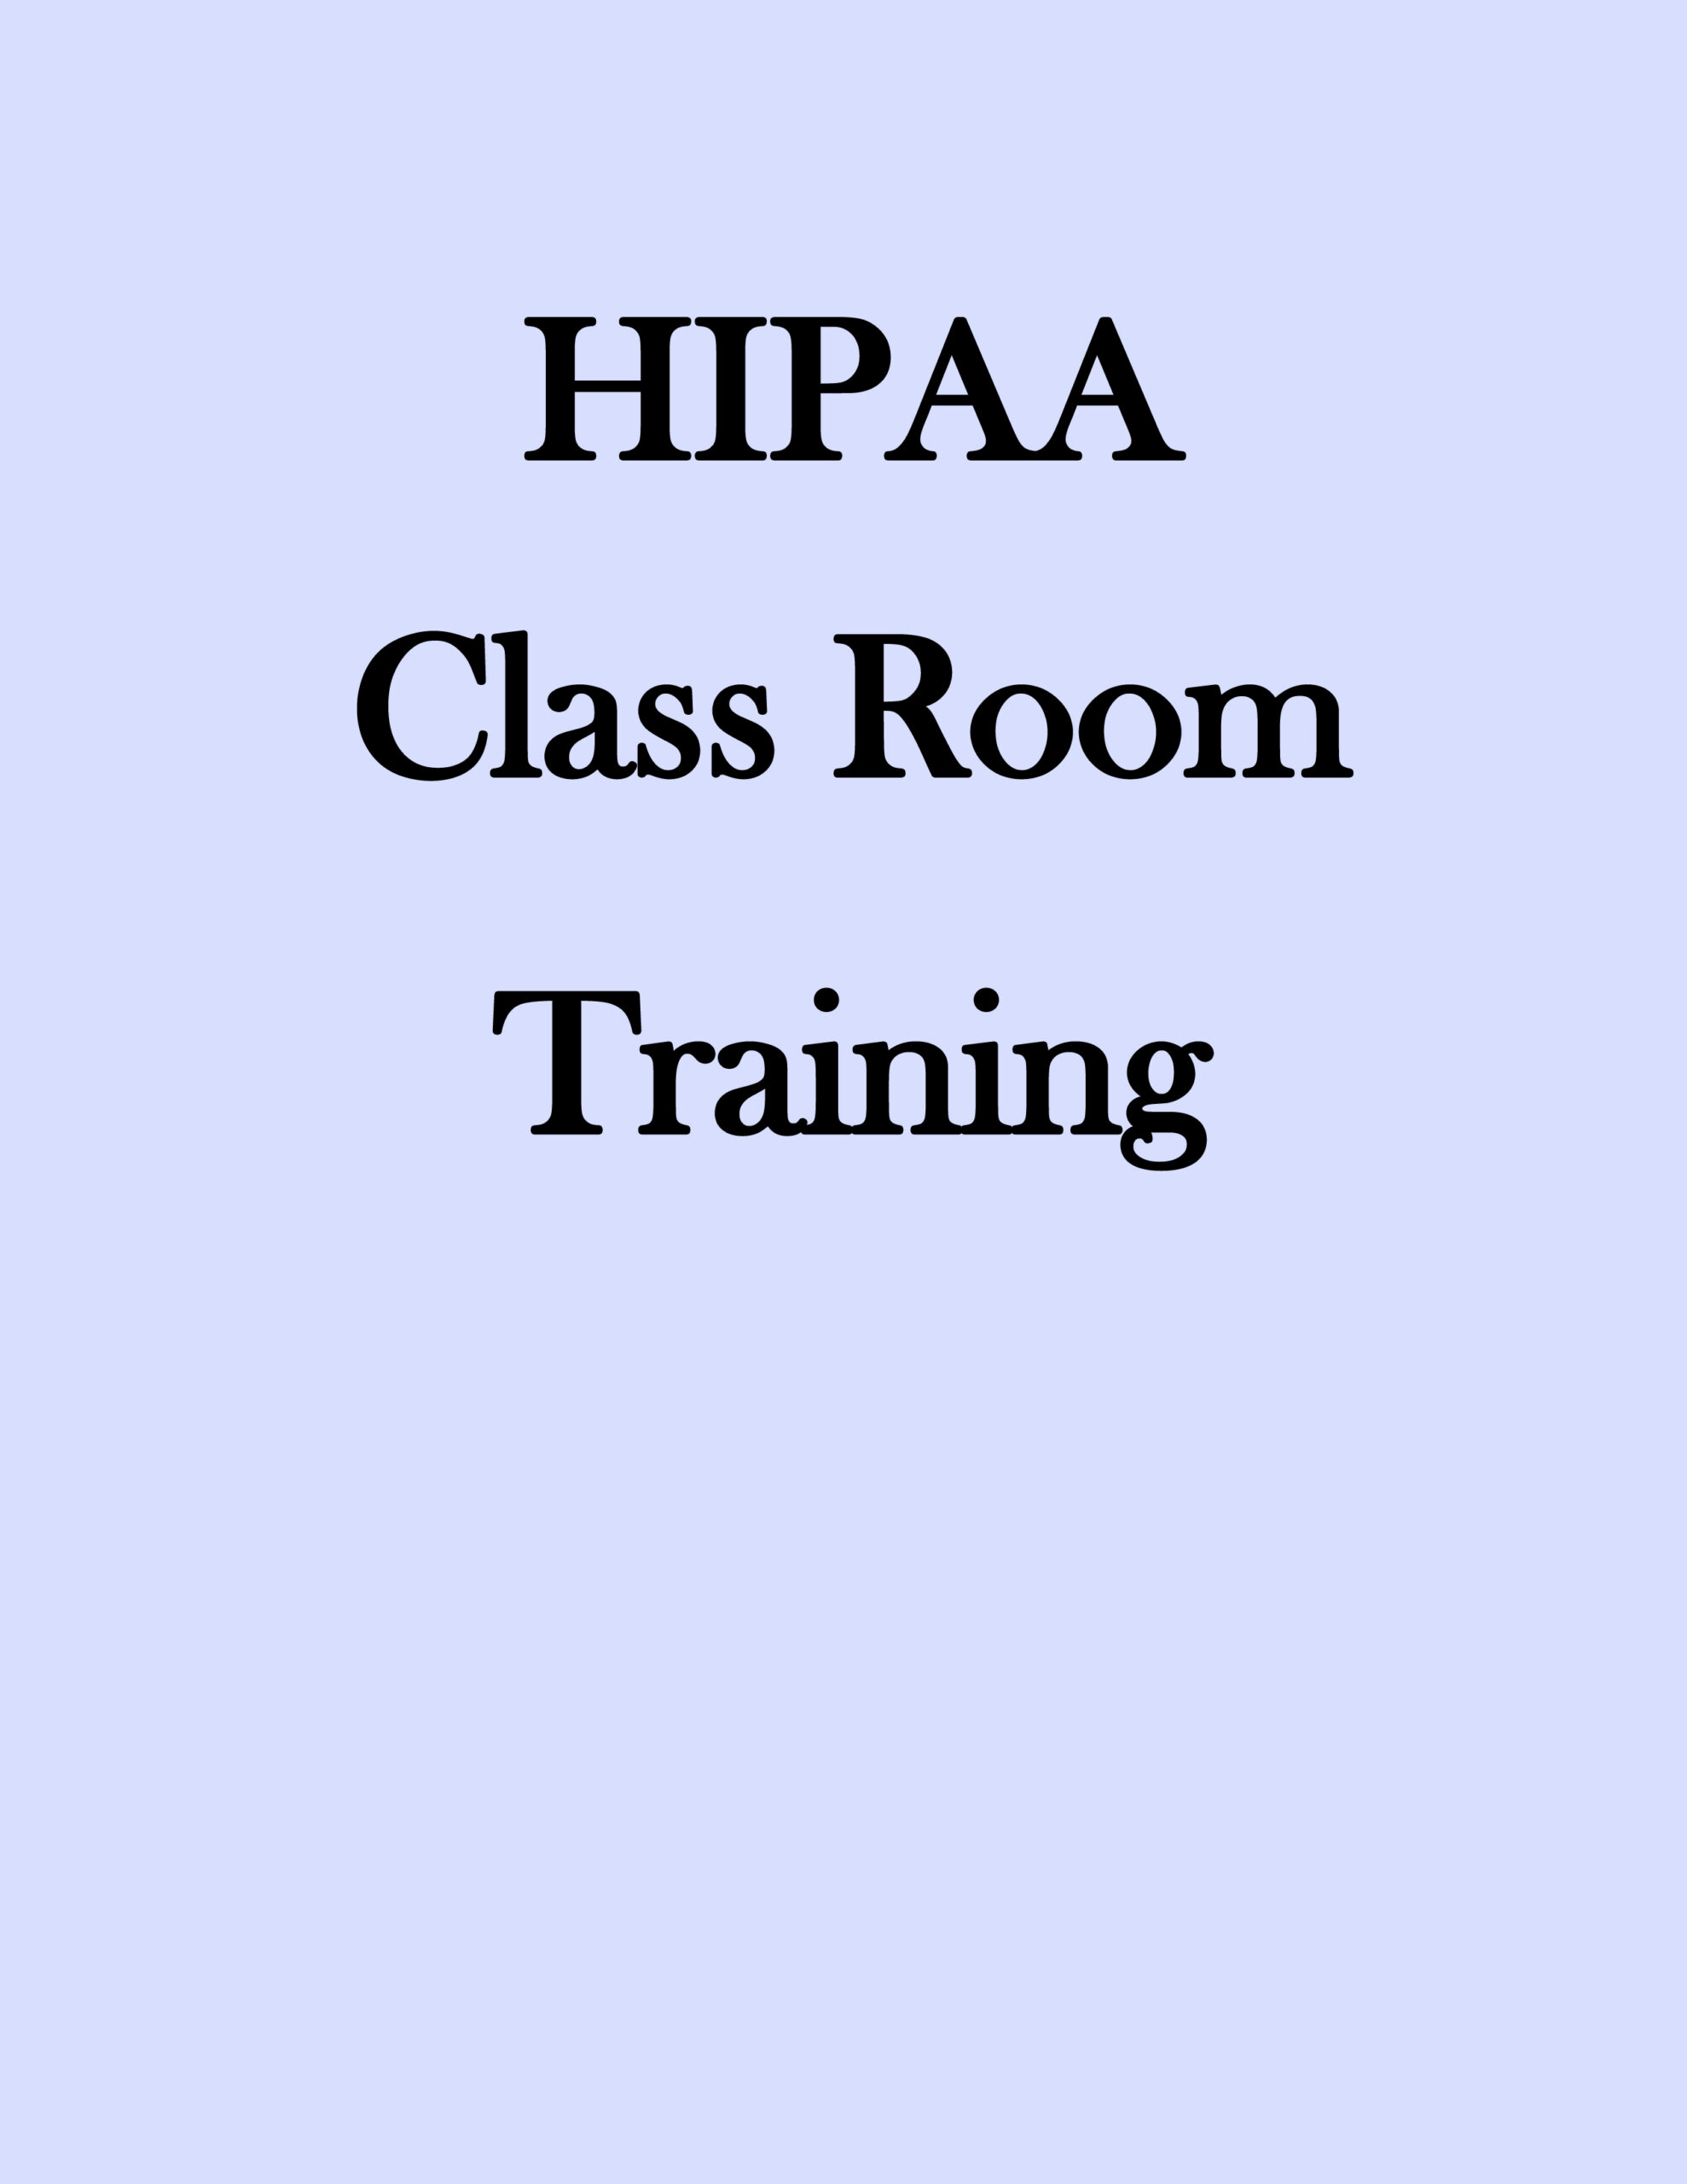 HIPAA Class Room Training